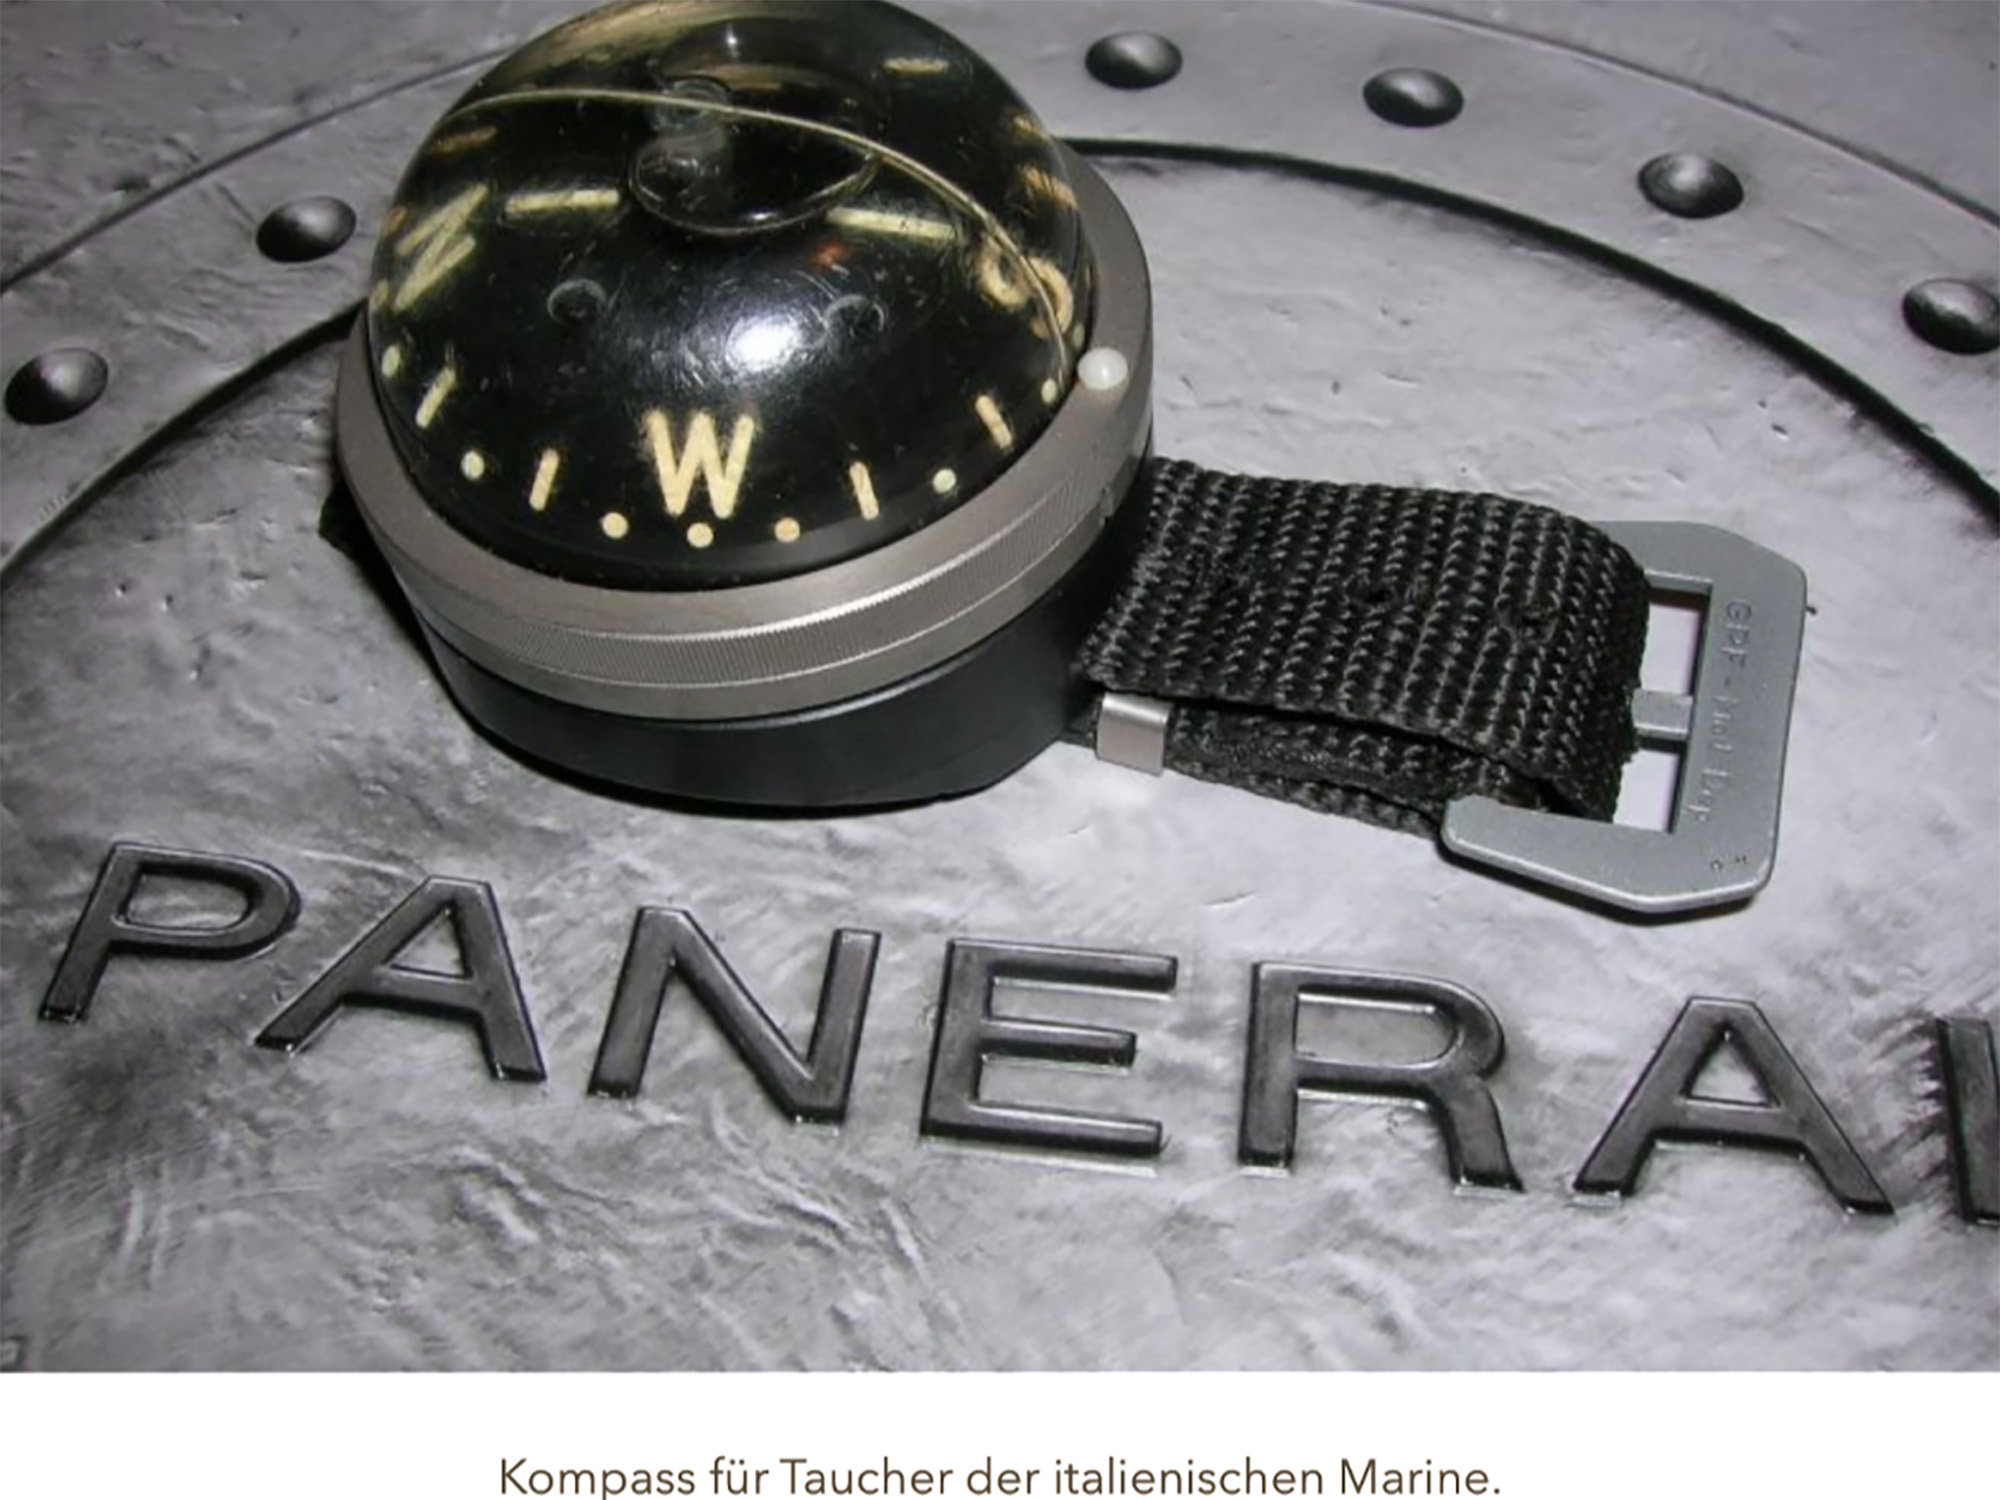 Panerai Kompass für Taucher der italienischen Marine